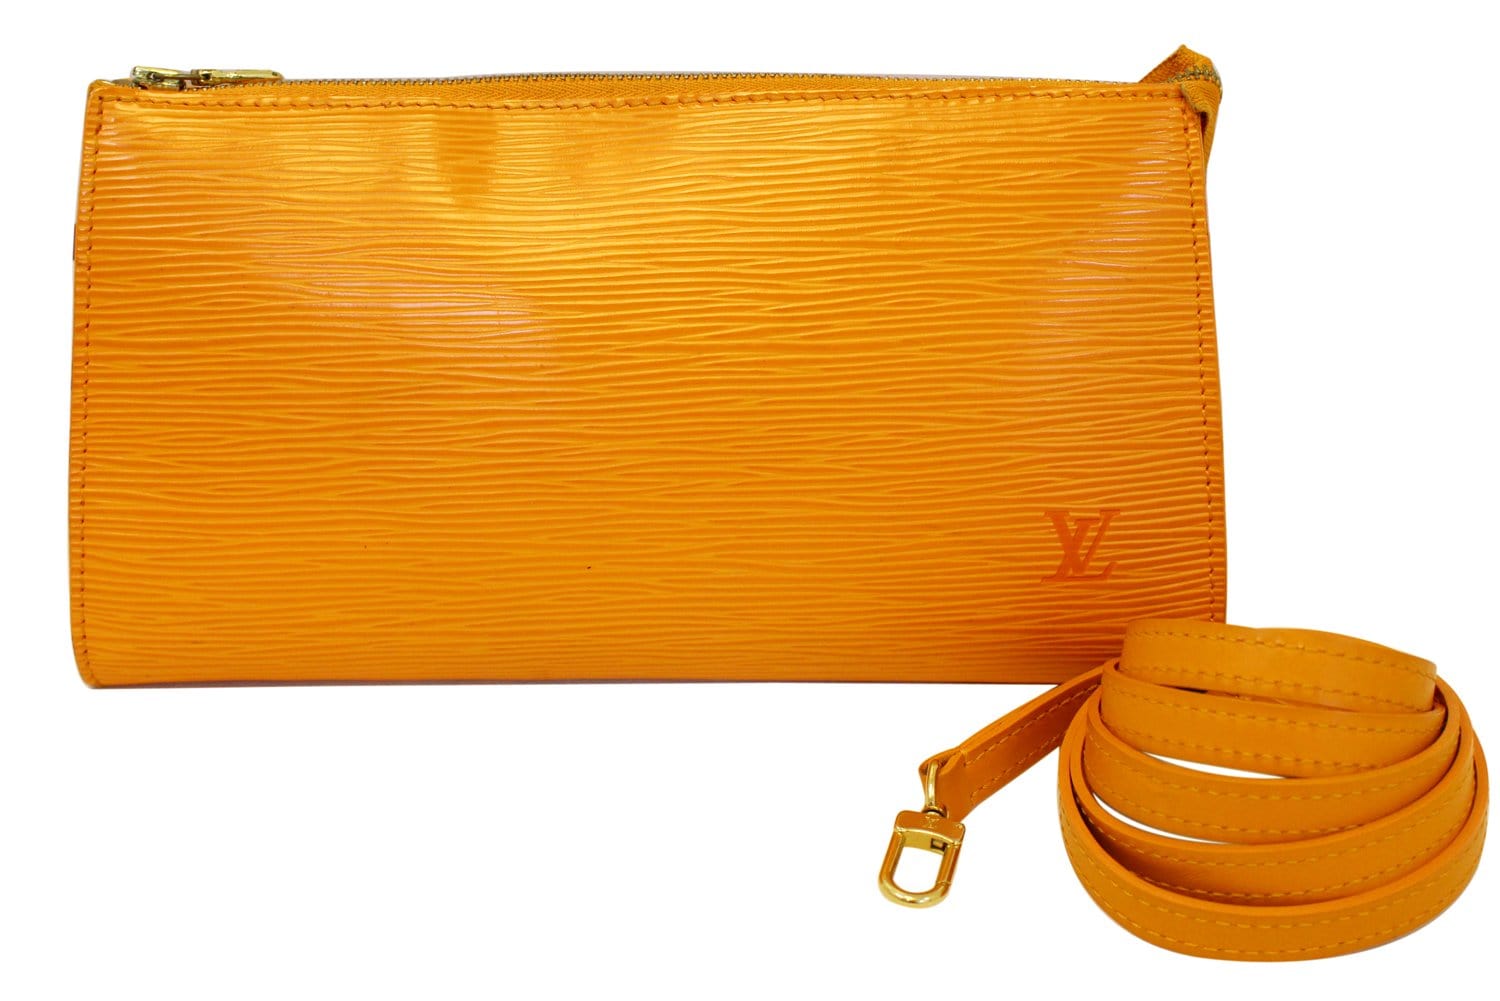 Louis Vuitton Pochette Accessoires NM Epi Leather Orange 217940319